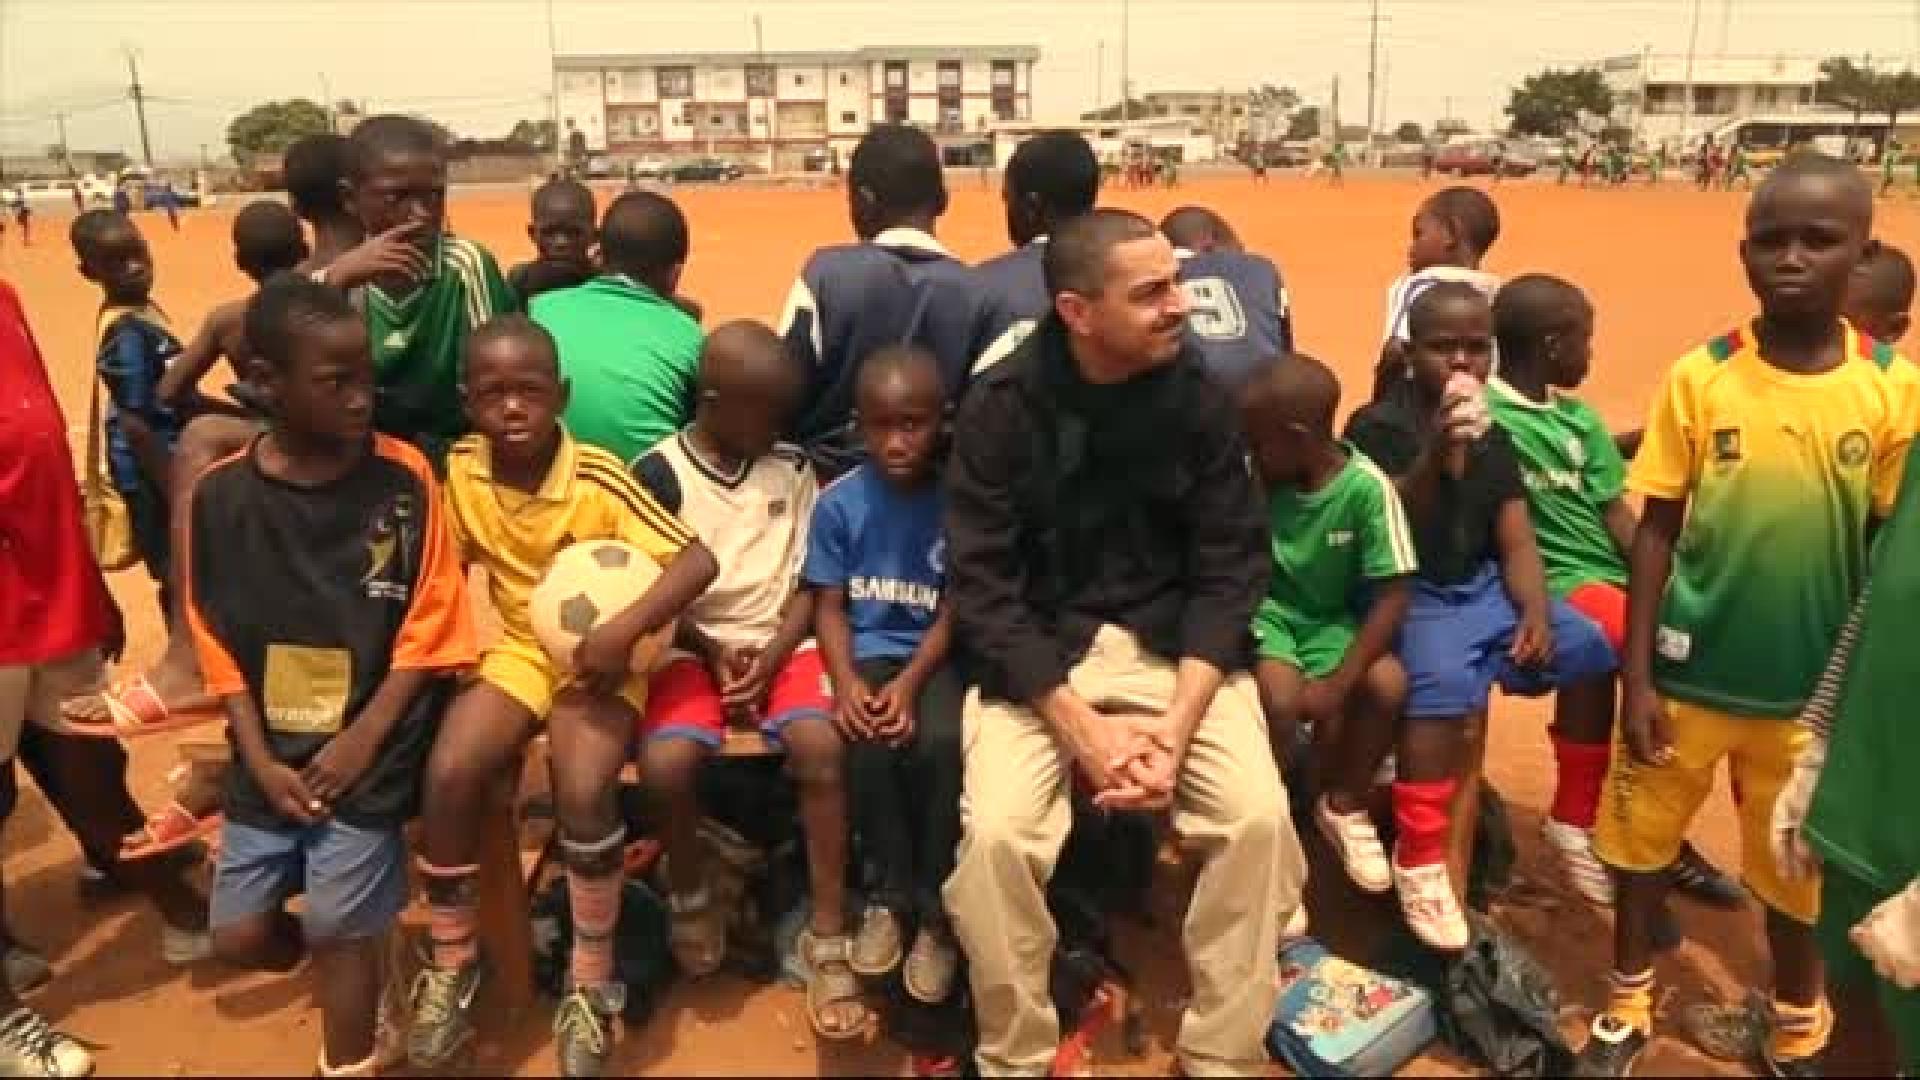 Jalkapallo tuo toivoa Kamerunin lapsille - pääseekö myös Arman kentälle?